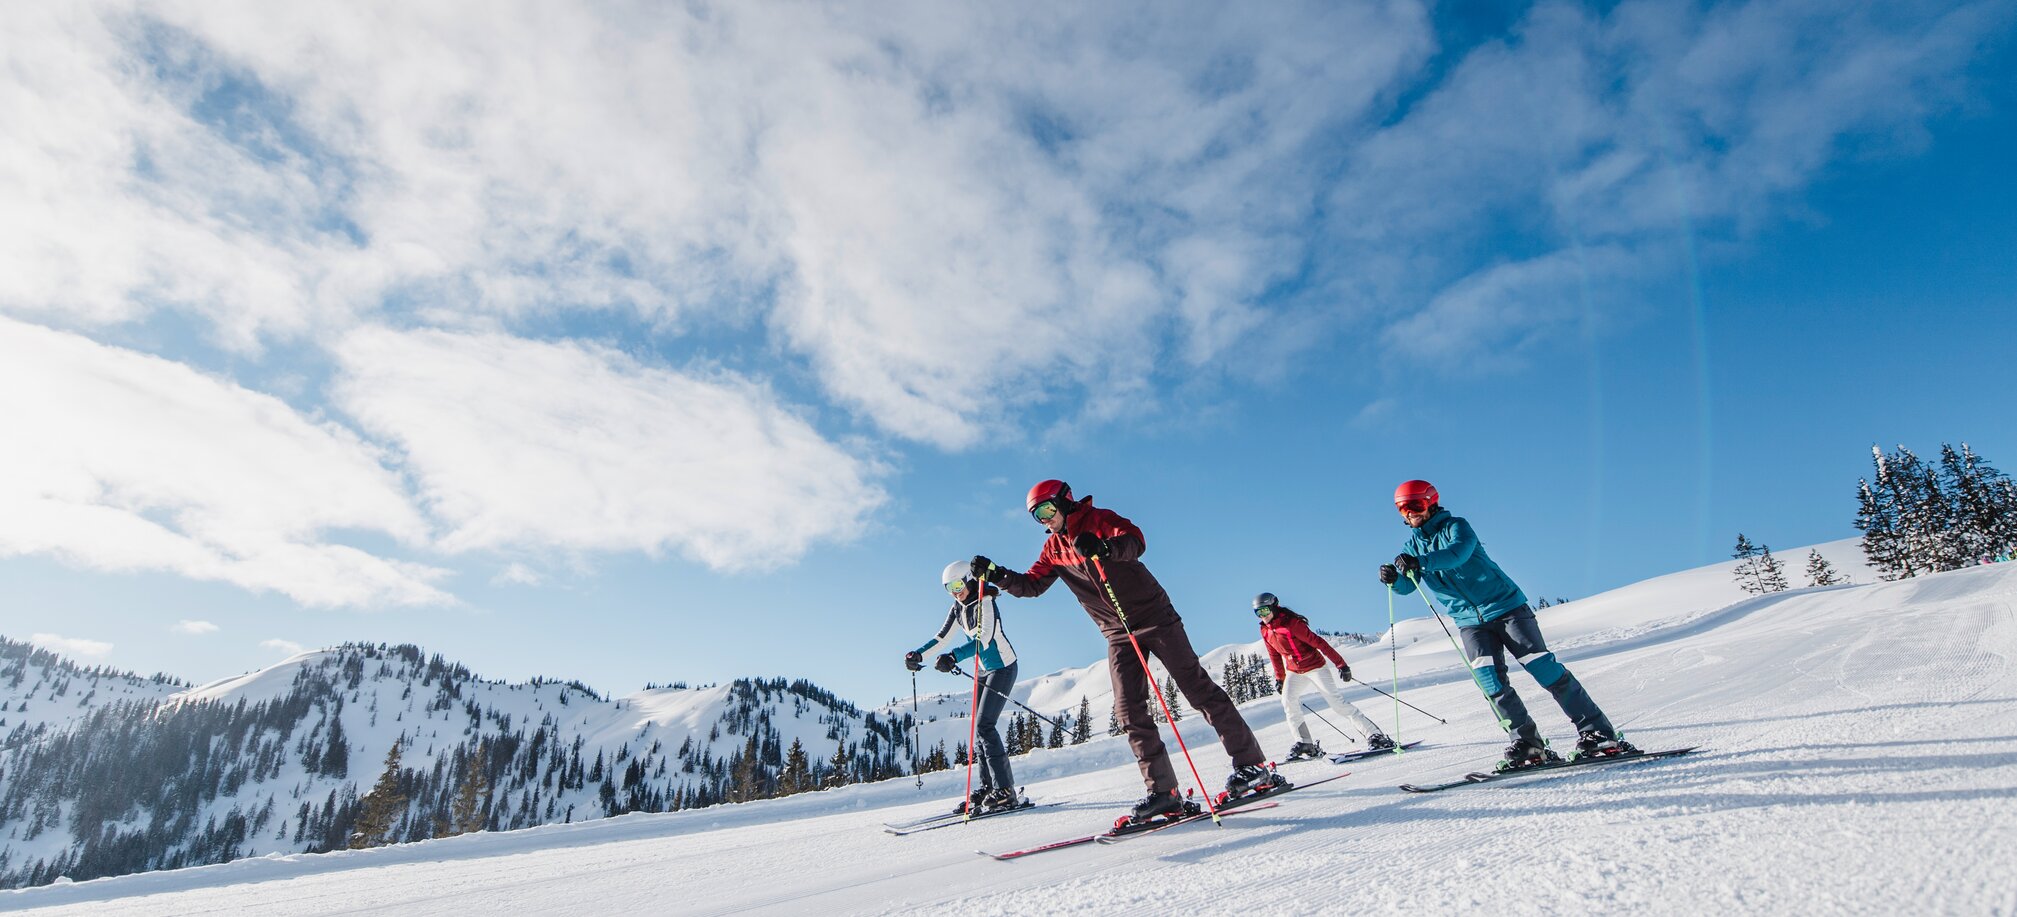 Spaß und gute Bedingungen auf den perfekt präparierten Skipisten in Ski amadé